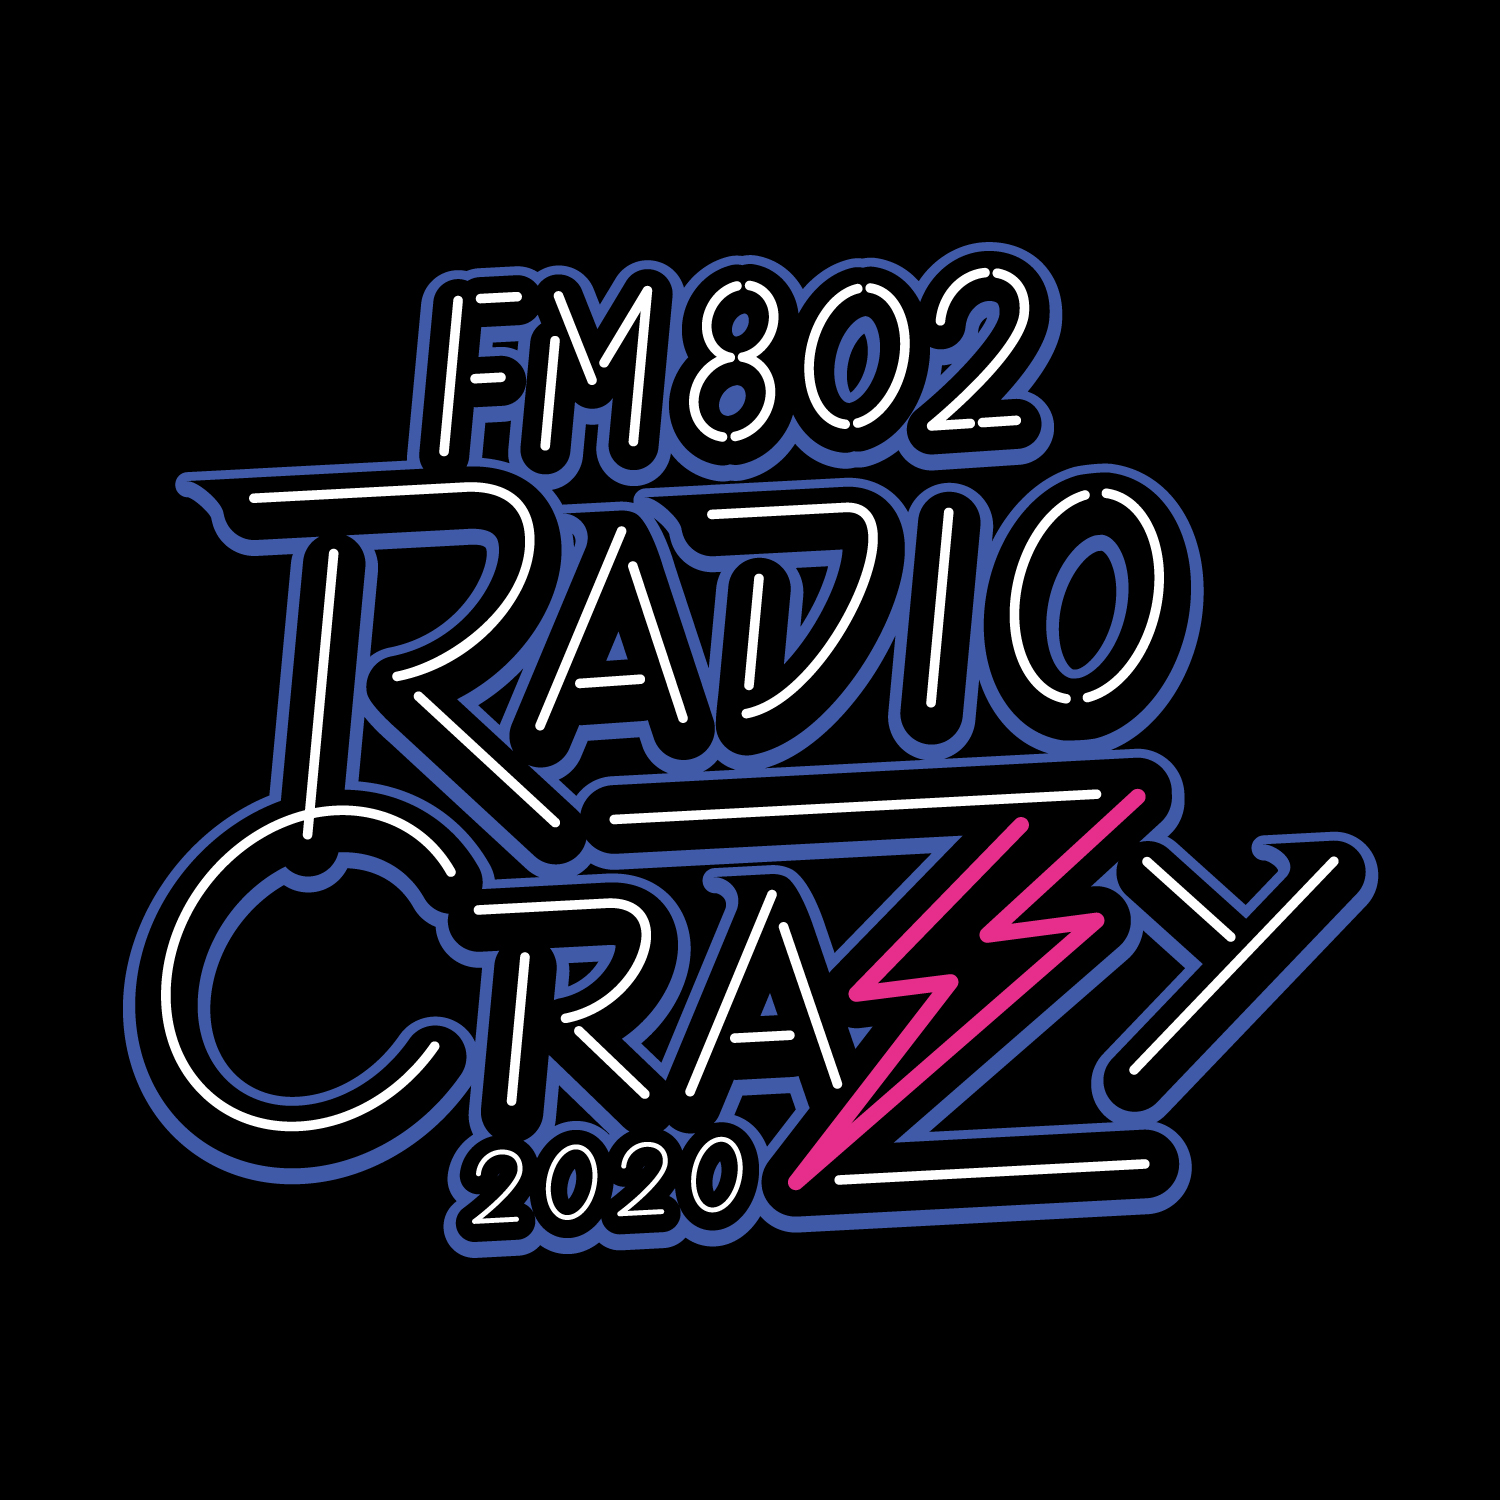  "RADIO CRAZY 2020" 出演決定！